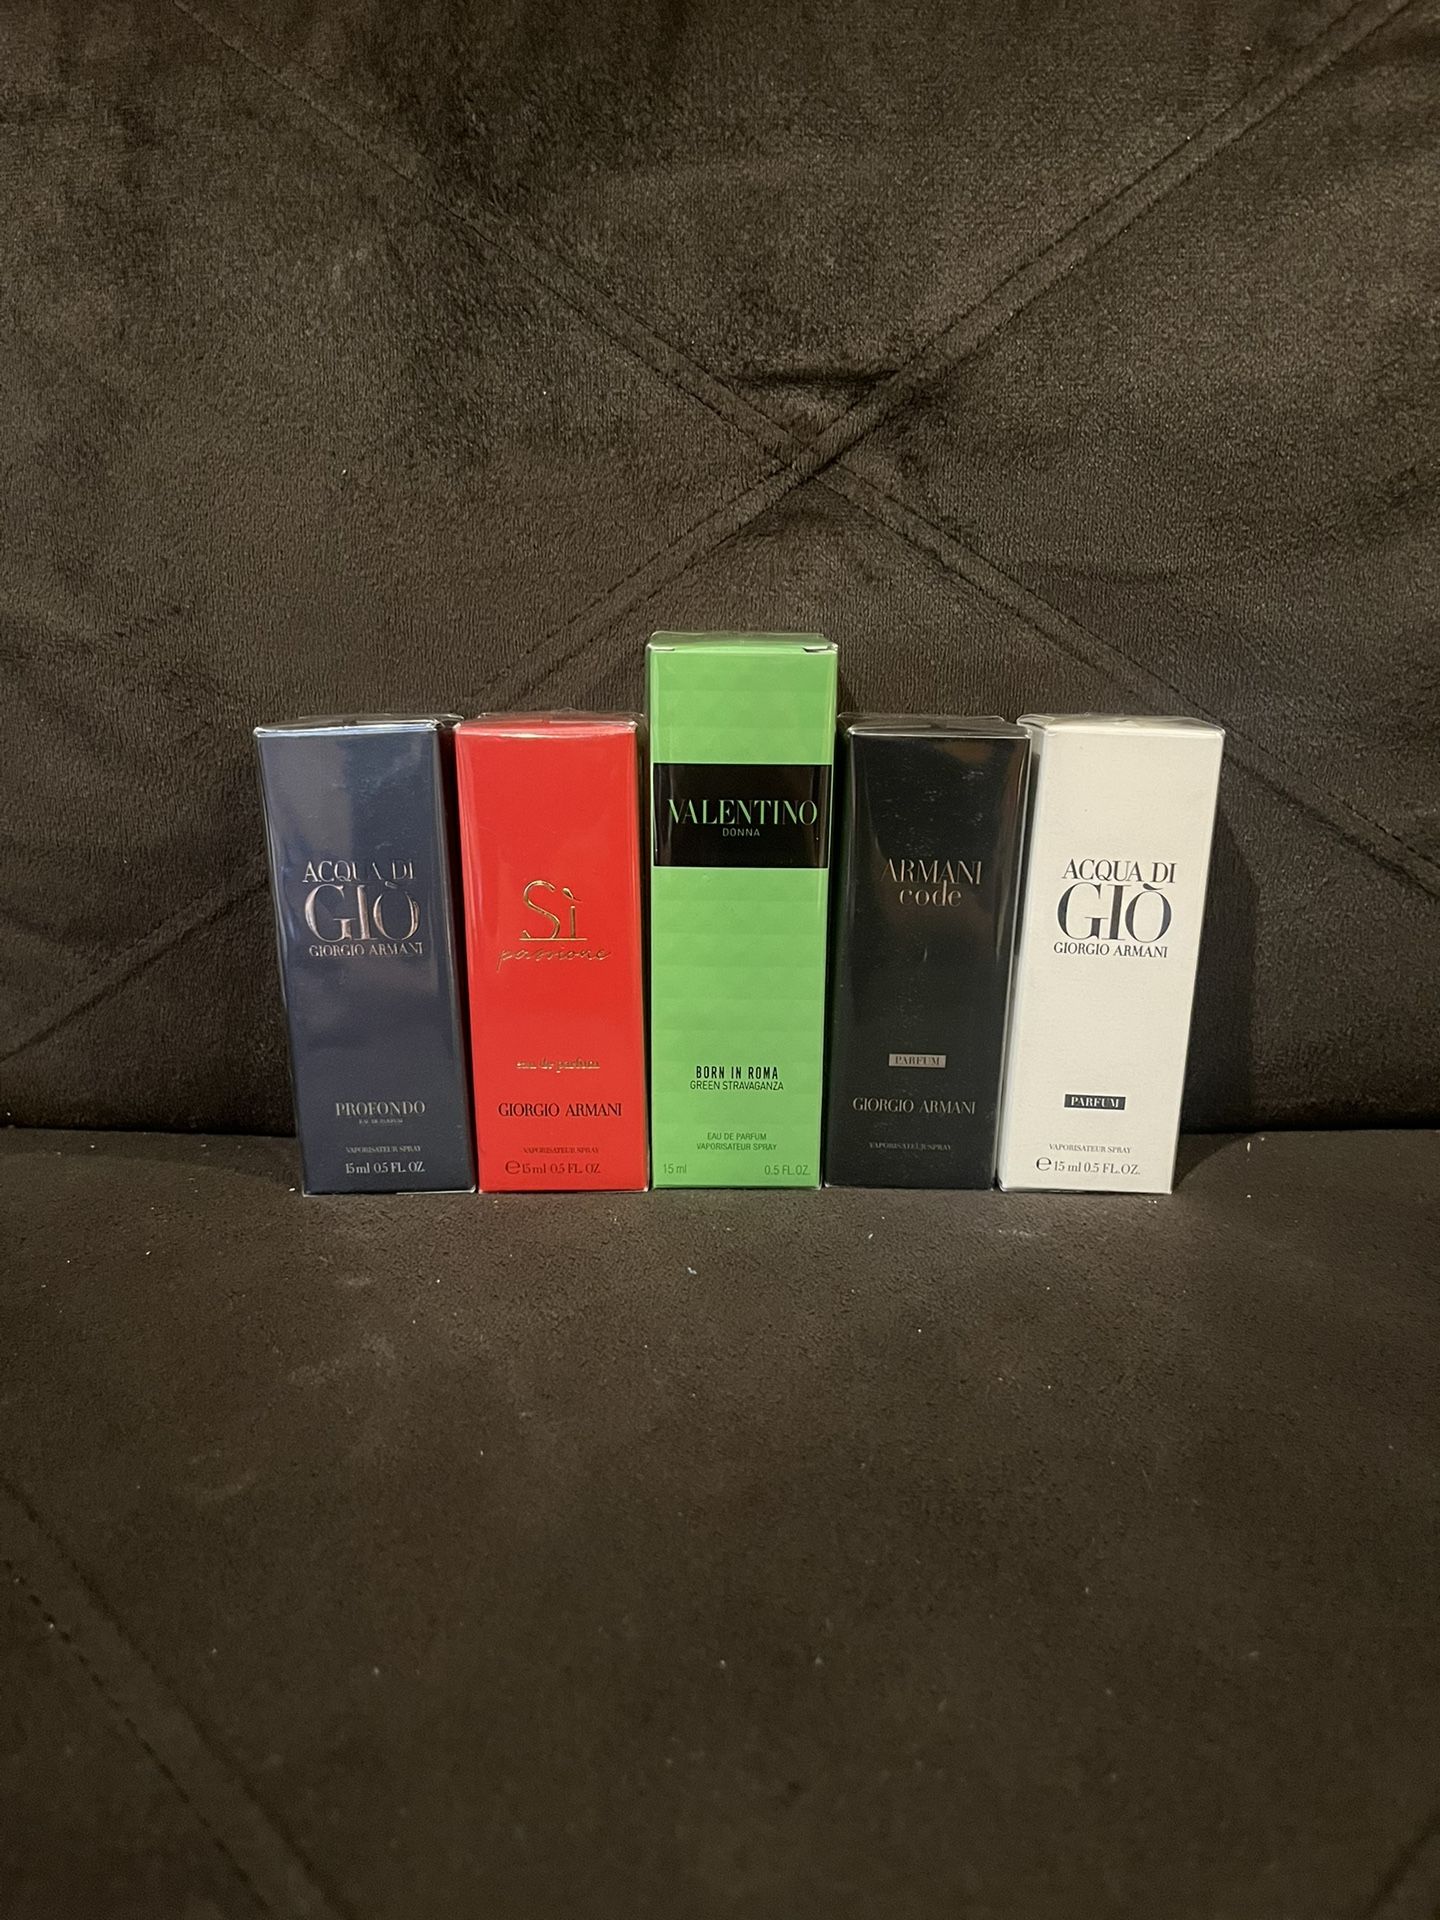 Travel Size Perfumes/Colognes: Giorgio Armani Or Valentino, 